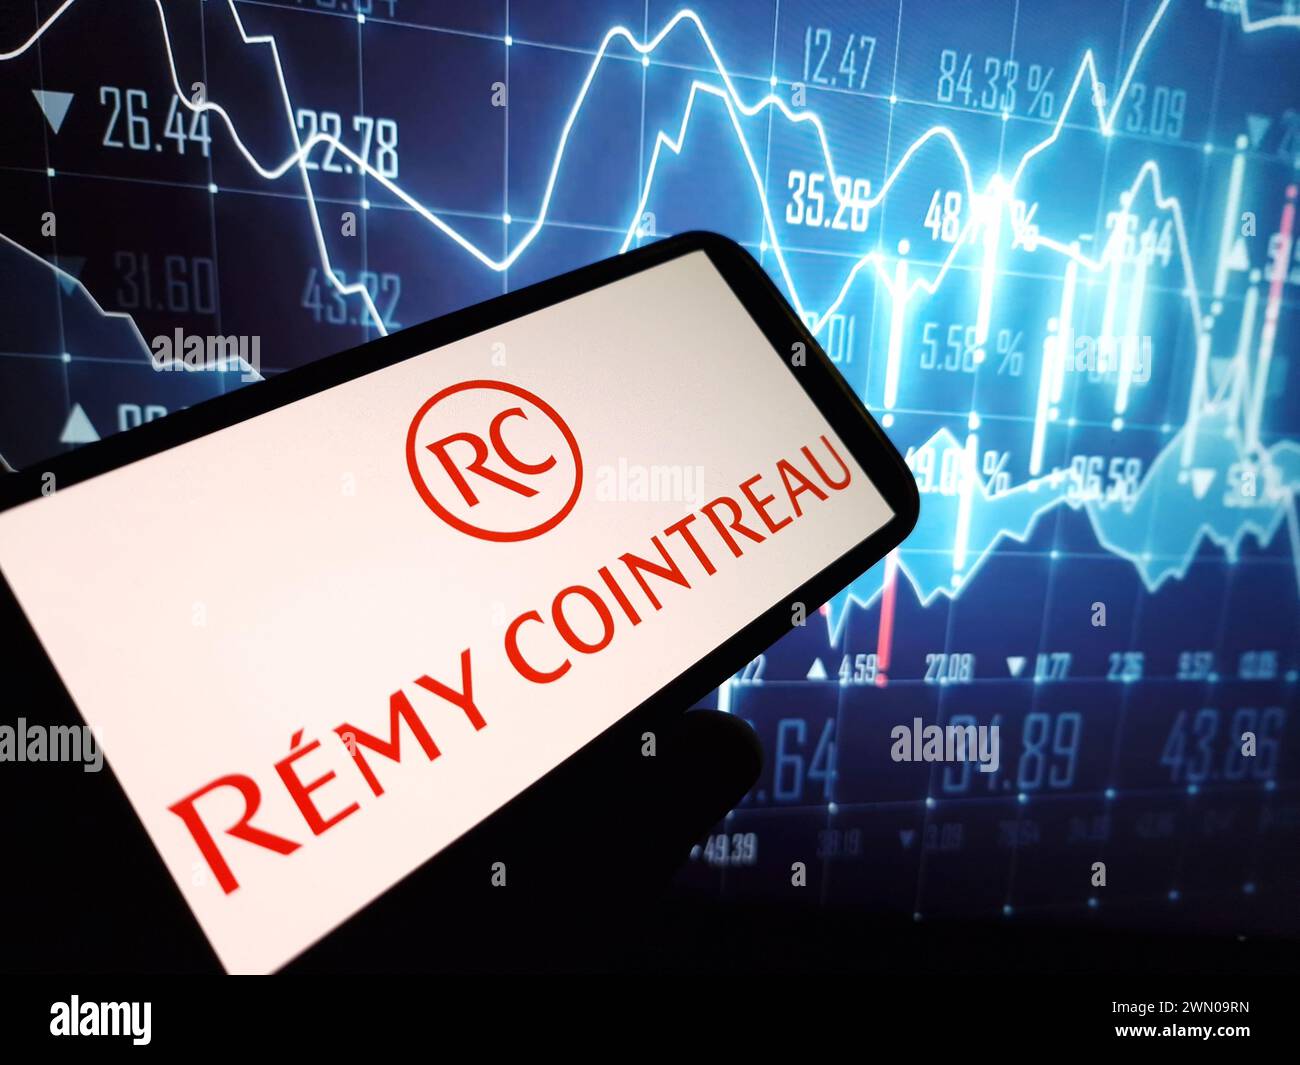 Konskie, Pologne - 24 février 2024 : logo de la société Remy Cointreau affiché sur le téléphone portable Banque D'Images